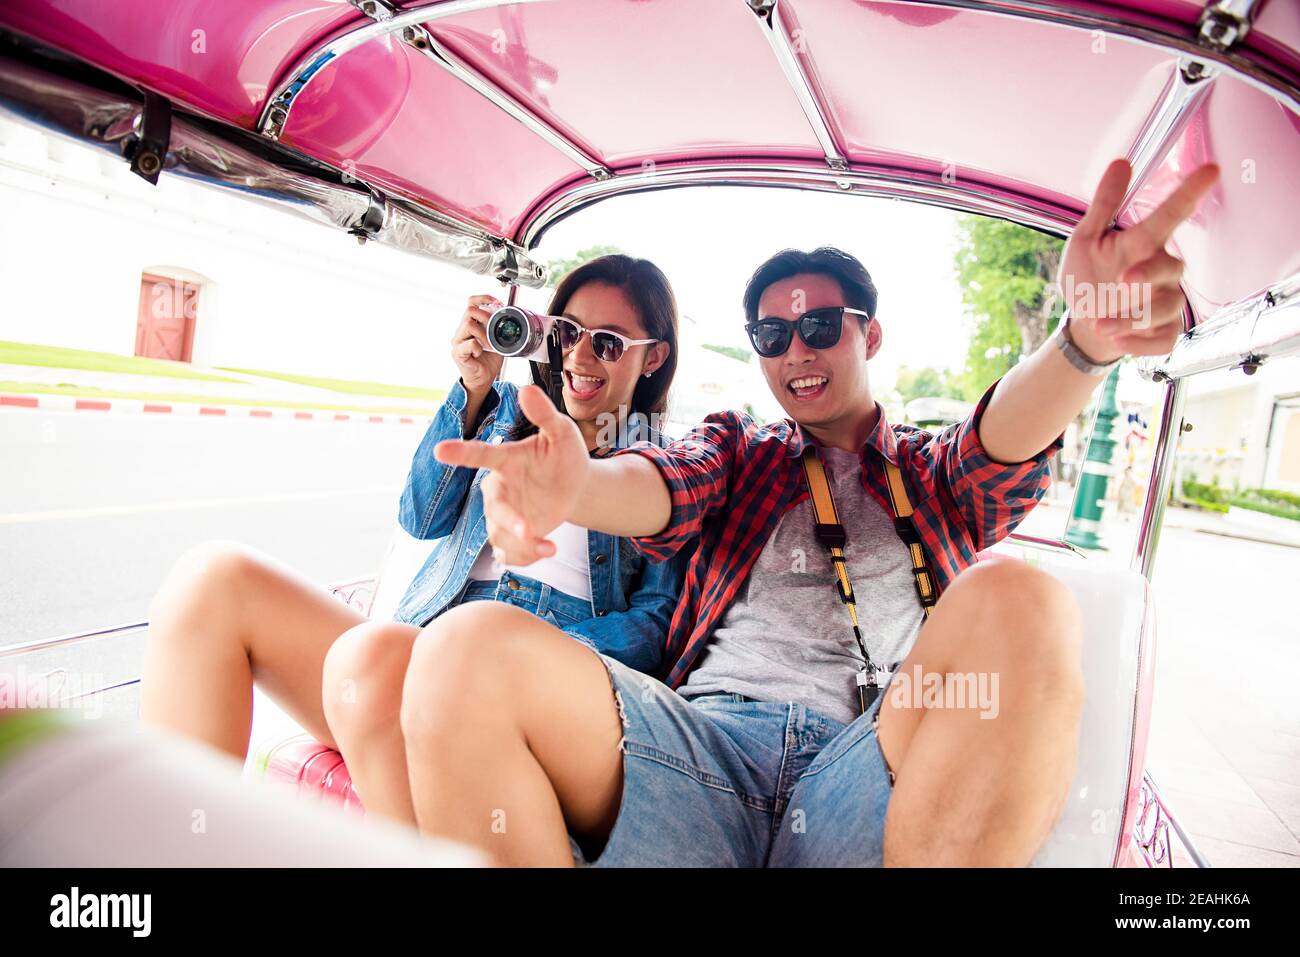 Jeune couple touristique asiatique prenant des photos et se sentant excité pendant Voyager en taxi Tuk Tuk local dans la ville de Bangkok en Thaïlande Banque D'Images